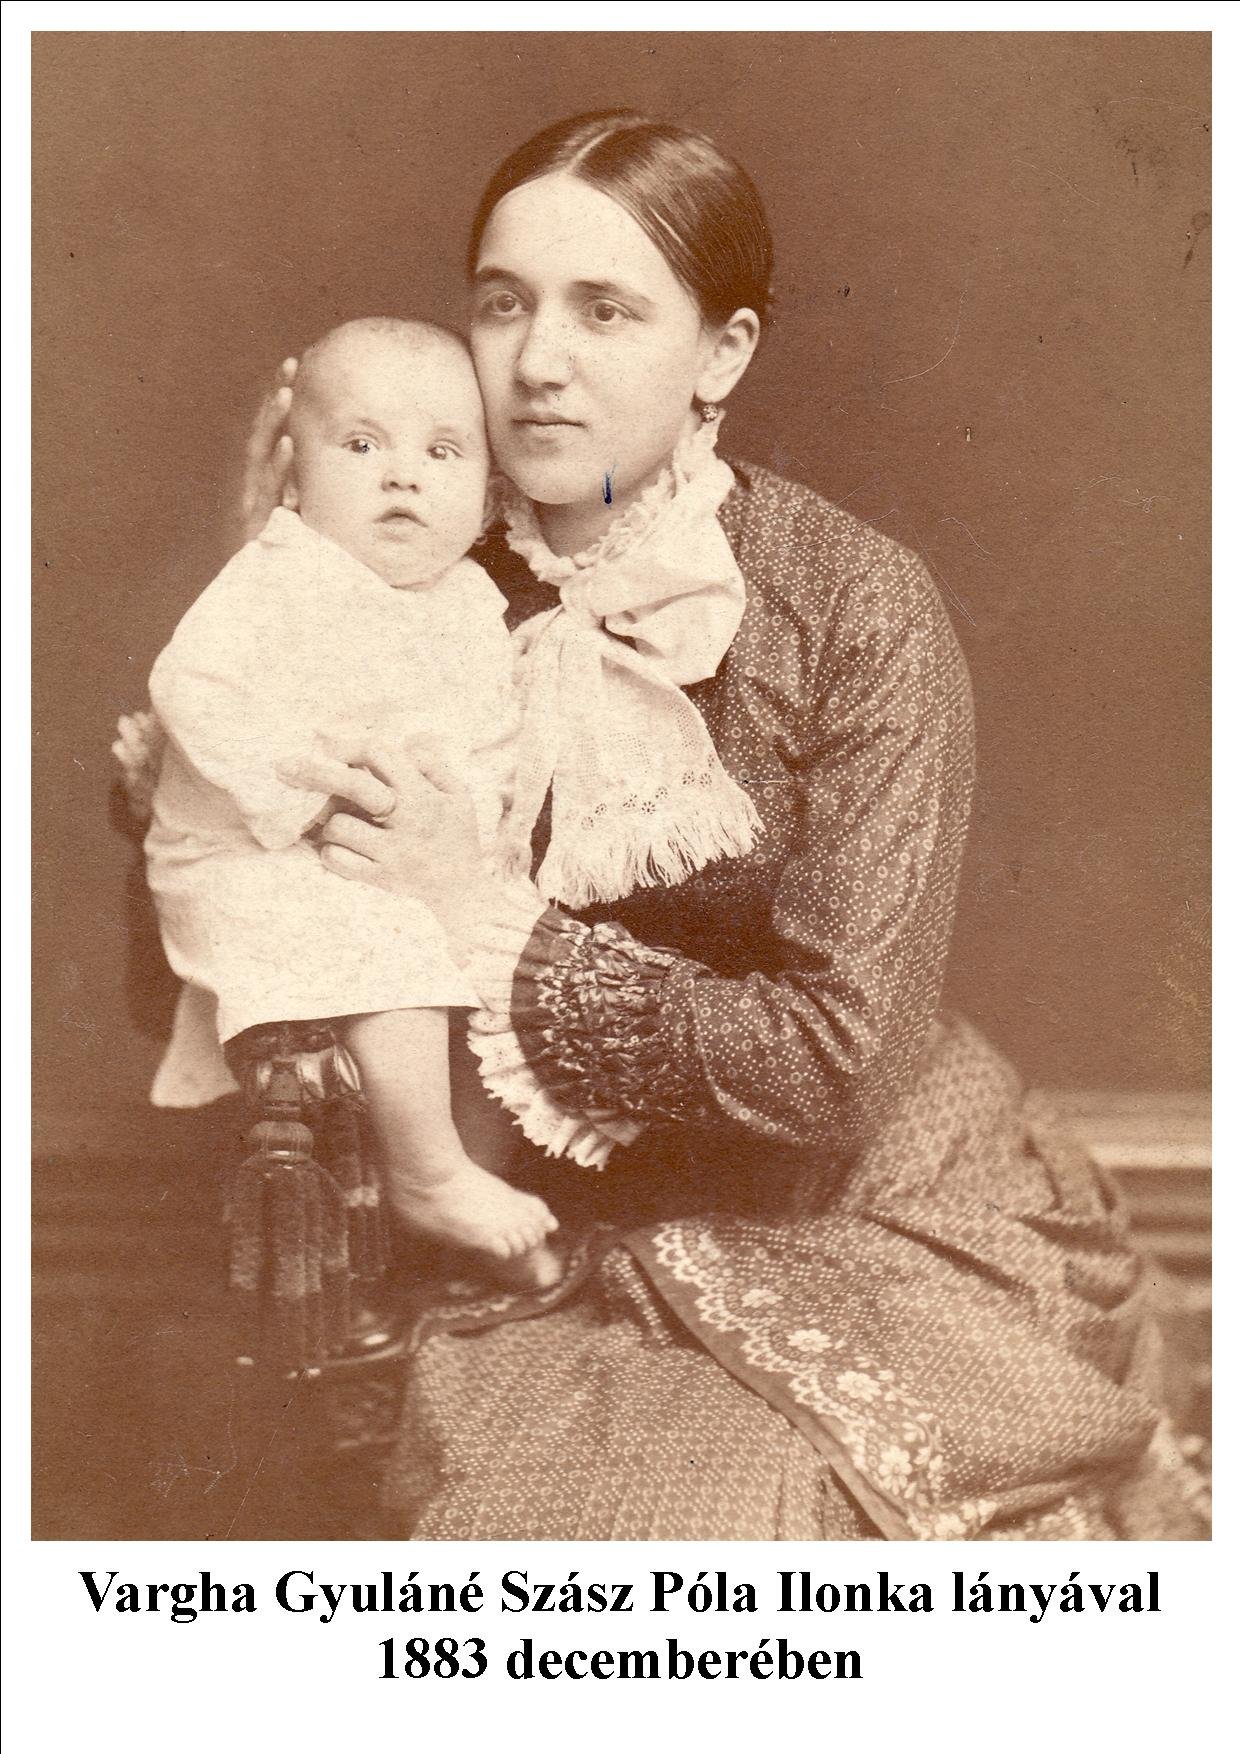 vargha gyuláné szász póla ilonka lányával 1883 decemberében - Fotó: Vargha család archívuma